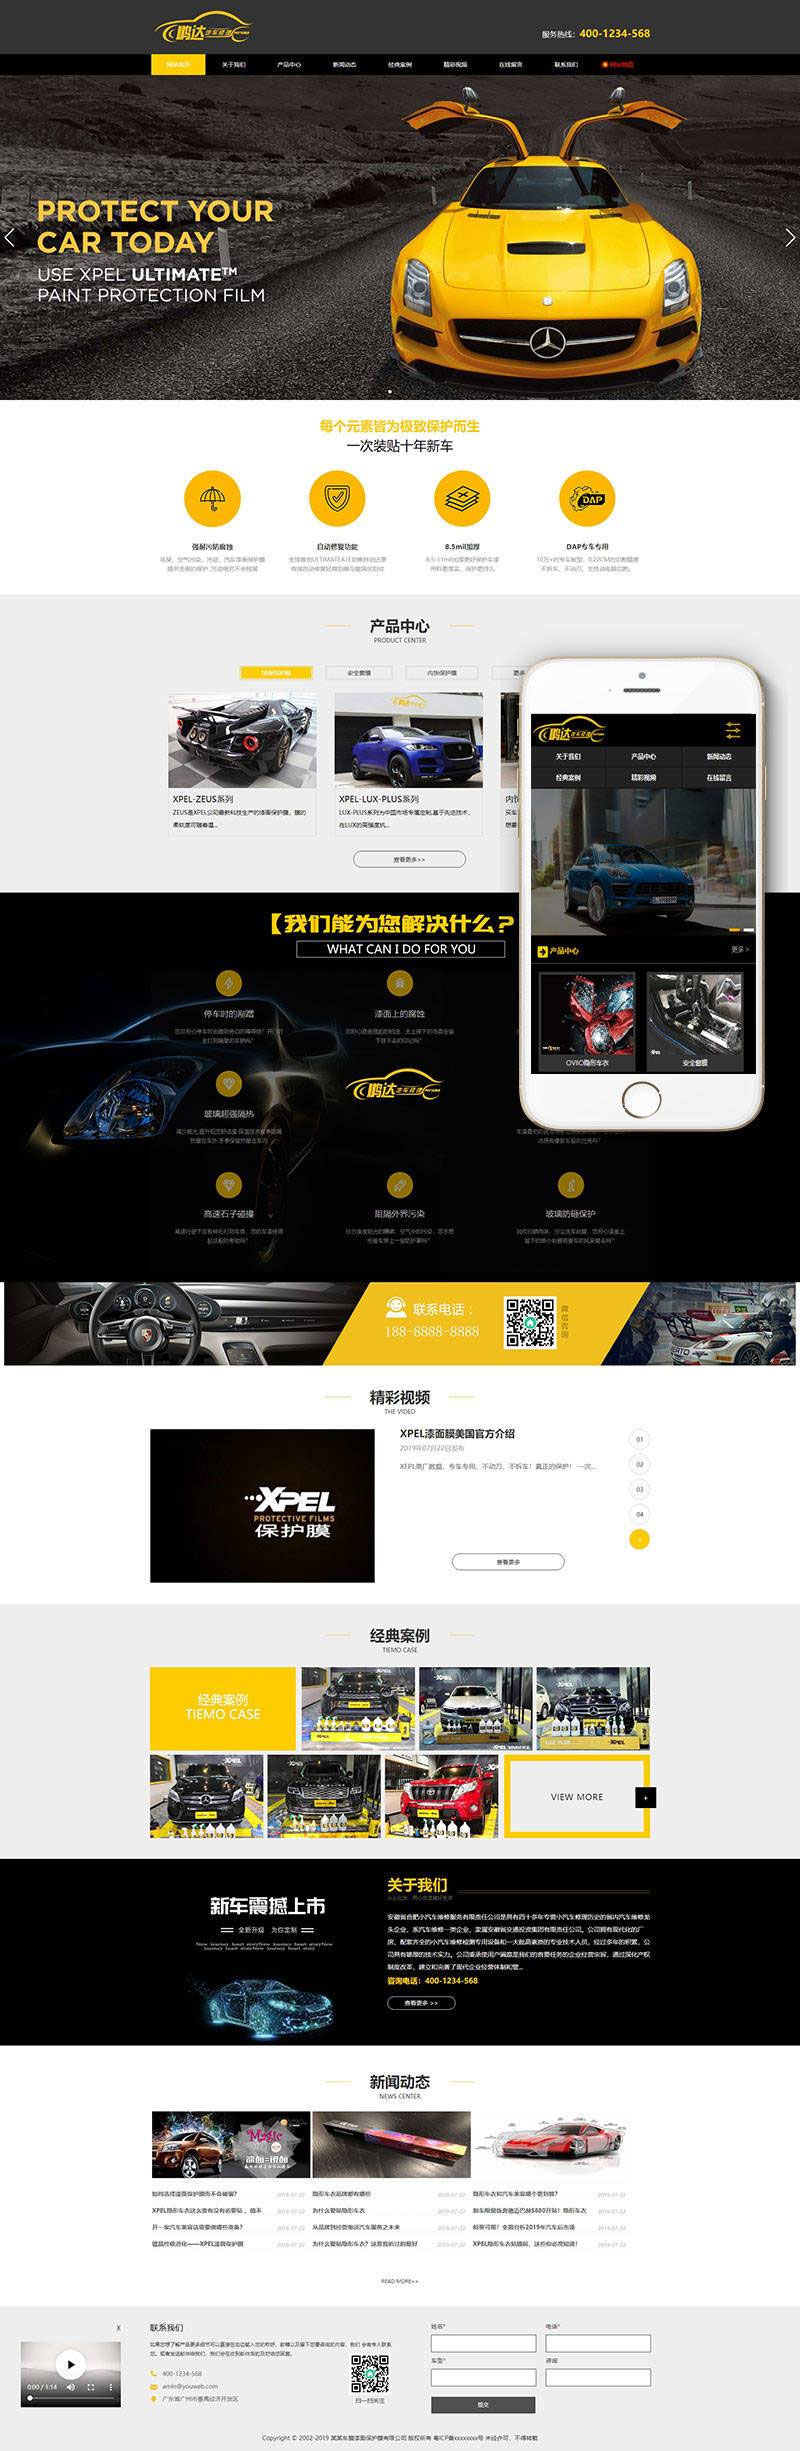 织梦dedecms网站模板带手机移动端 汽车美容维修贴膜公司网站源码